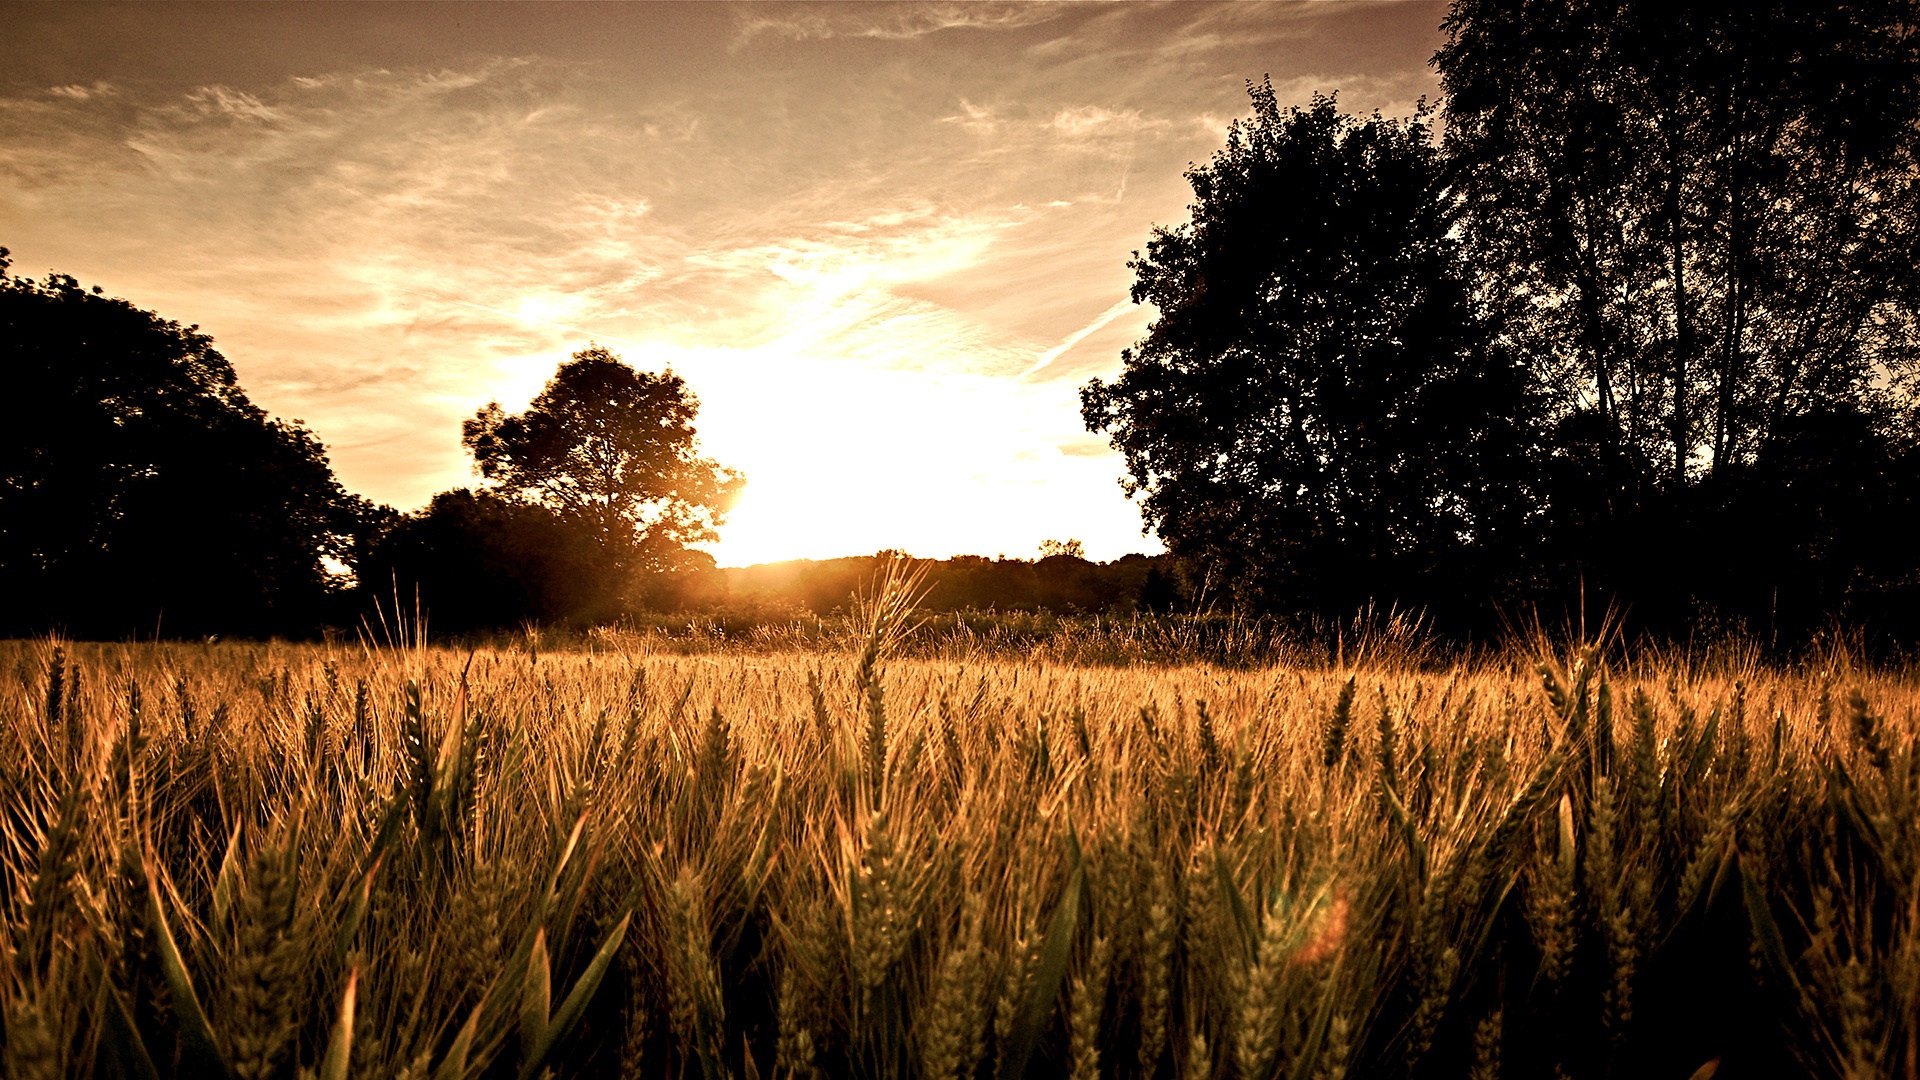 fields_with_wheat-1920x1080.jpg